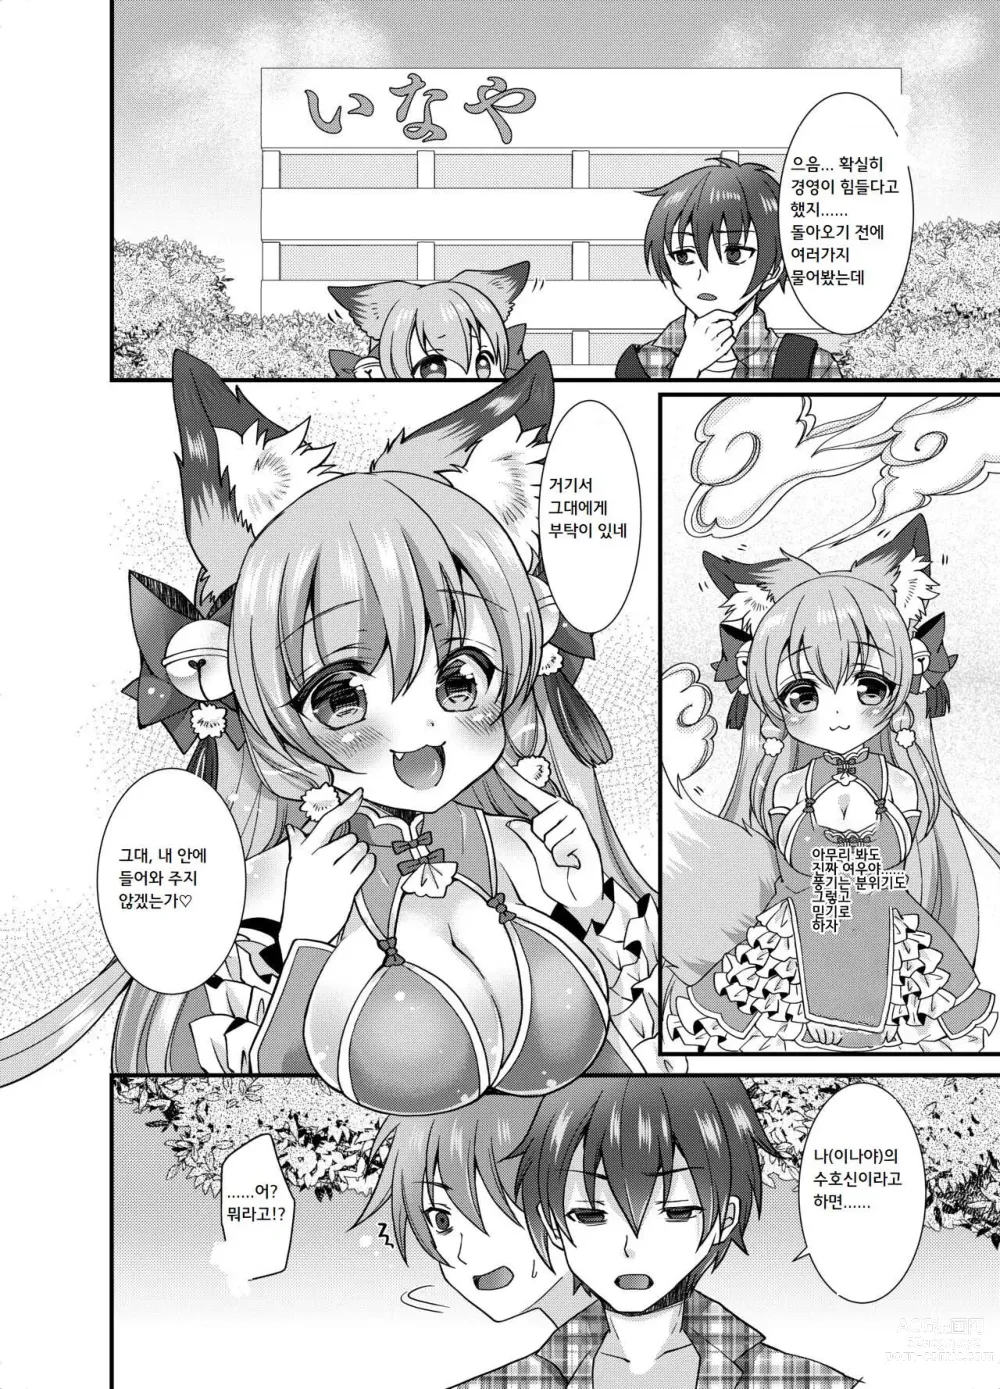 Page 5 of doujinshi 유케무리 콩콩 유턴!